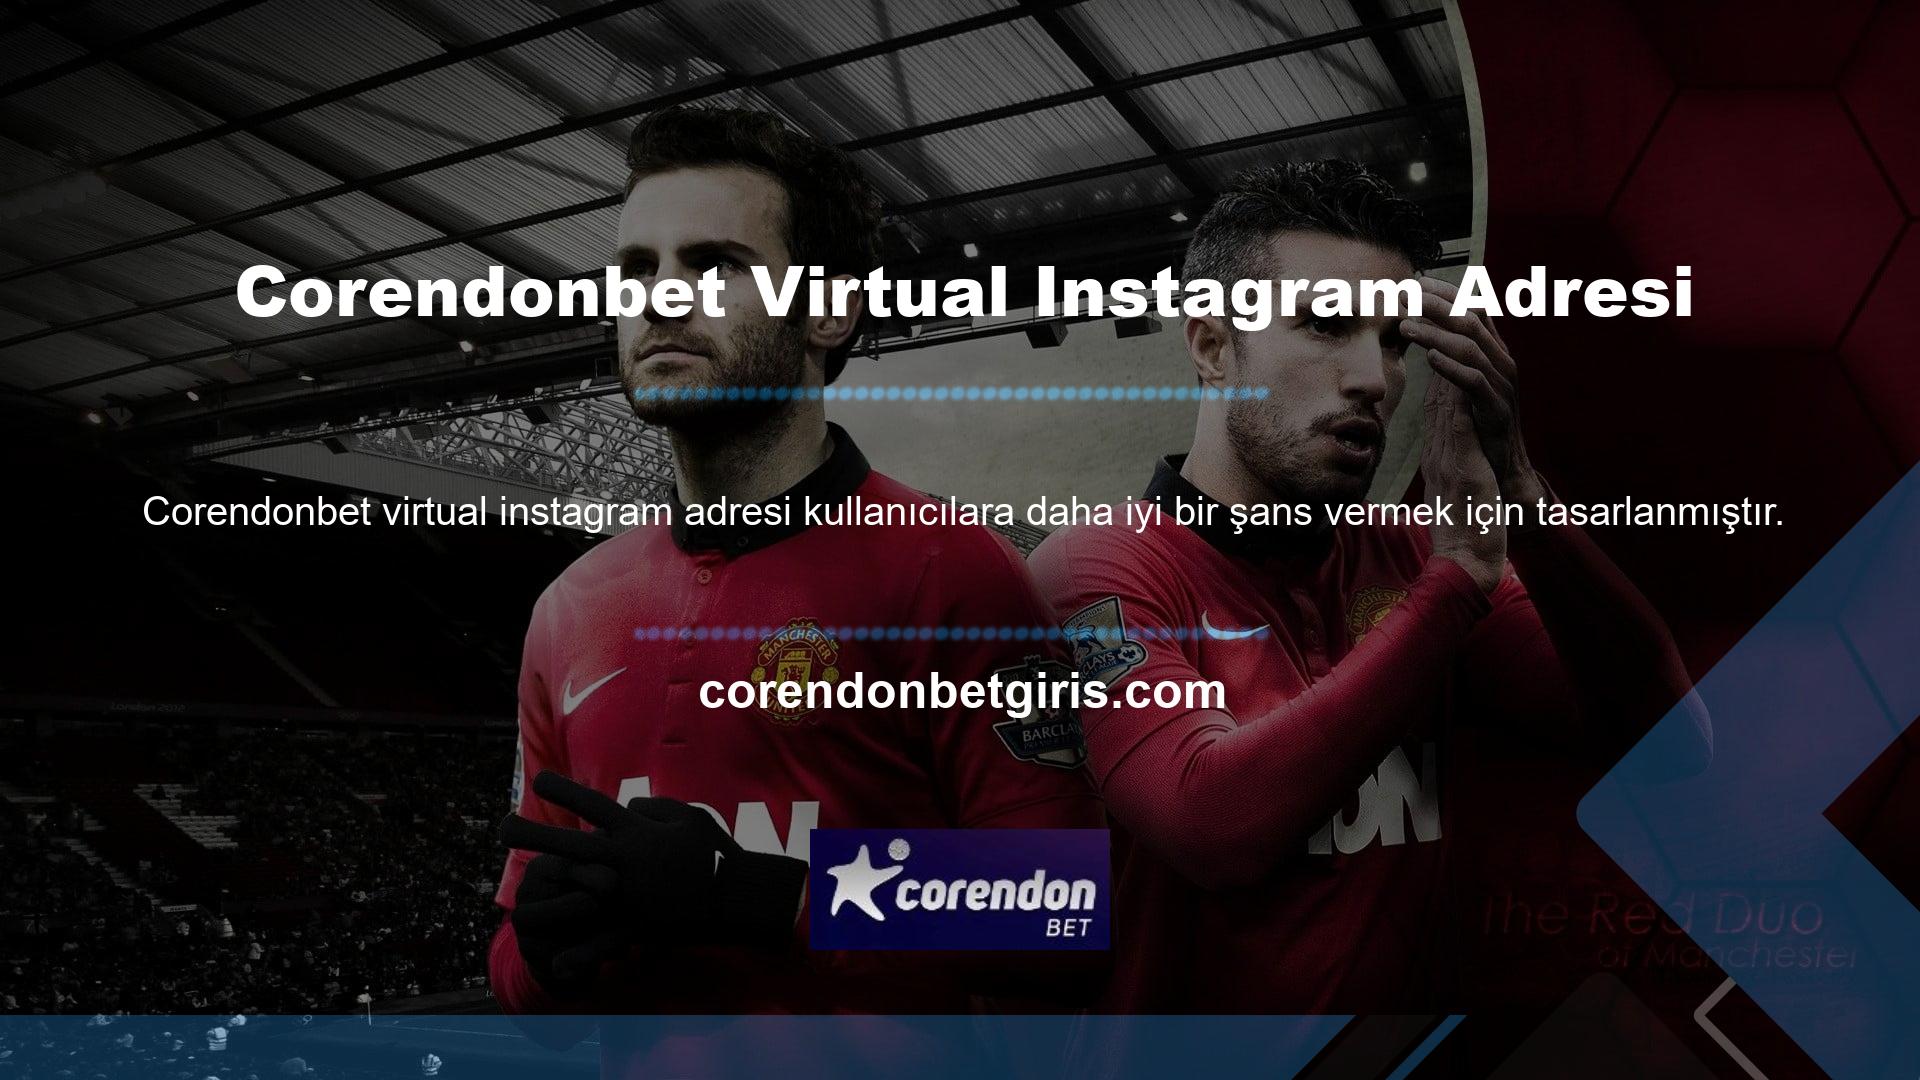 Corendonbet Instagram adresi, sanal bahis bölümü üyeleri için farklı kategorilerde sanal bahis oyunları sunmaktadır